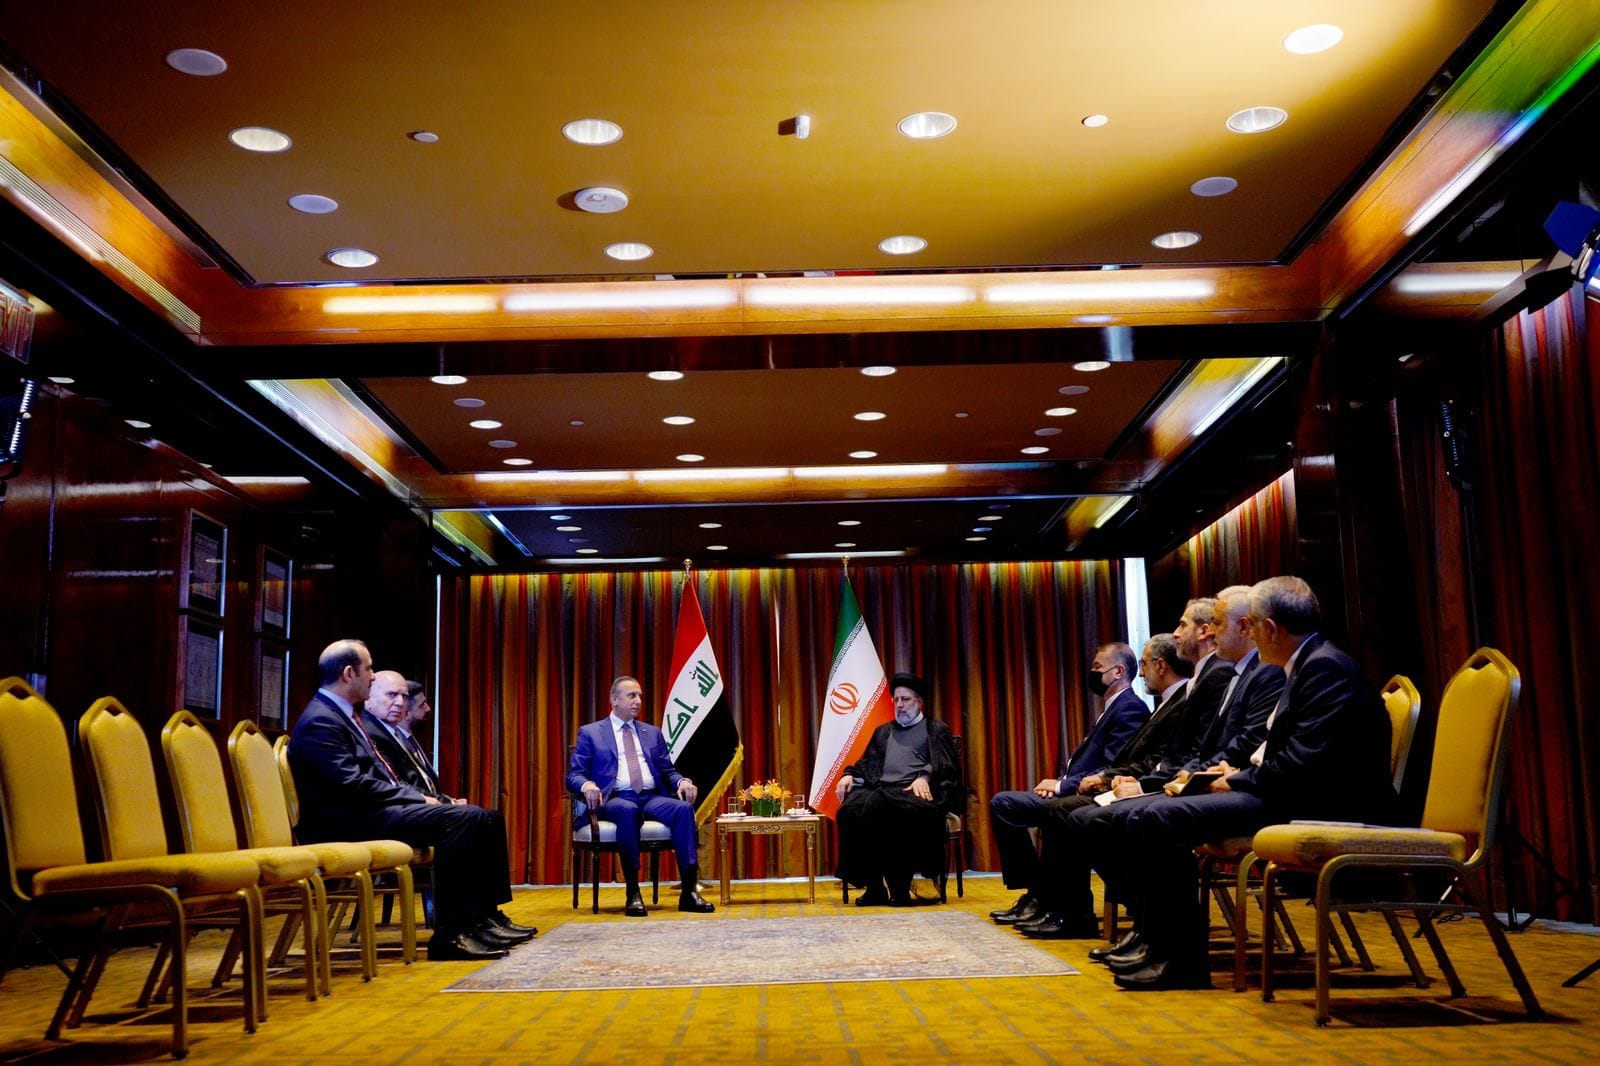 الرئيس الايراني يؤكد دعمه لتشكيل حكومة عراقية مستقرة ويثني على الكاظمي 